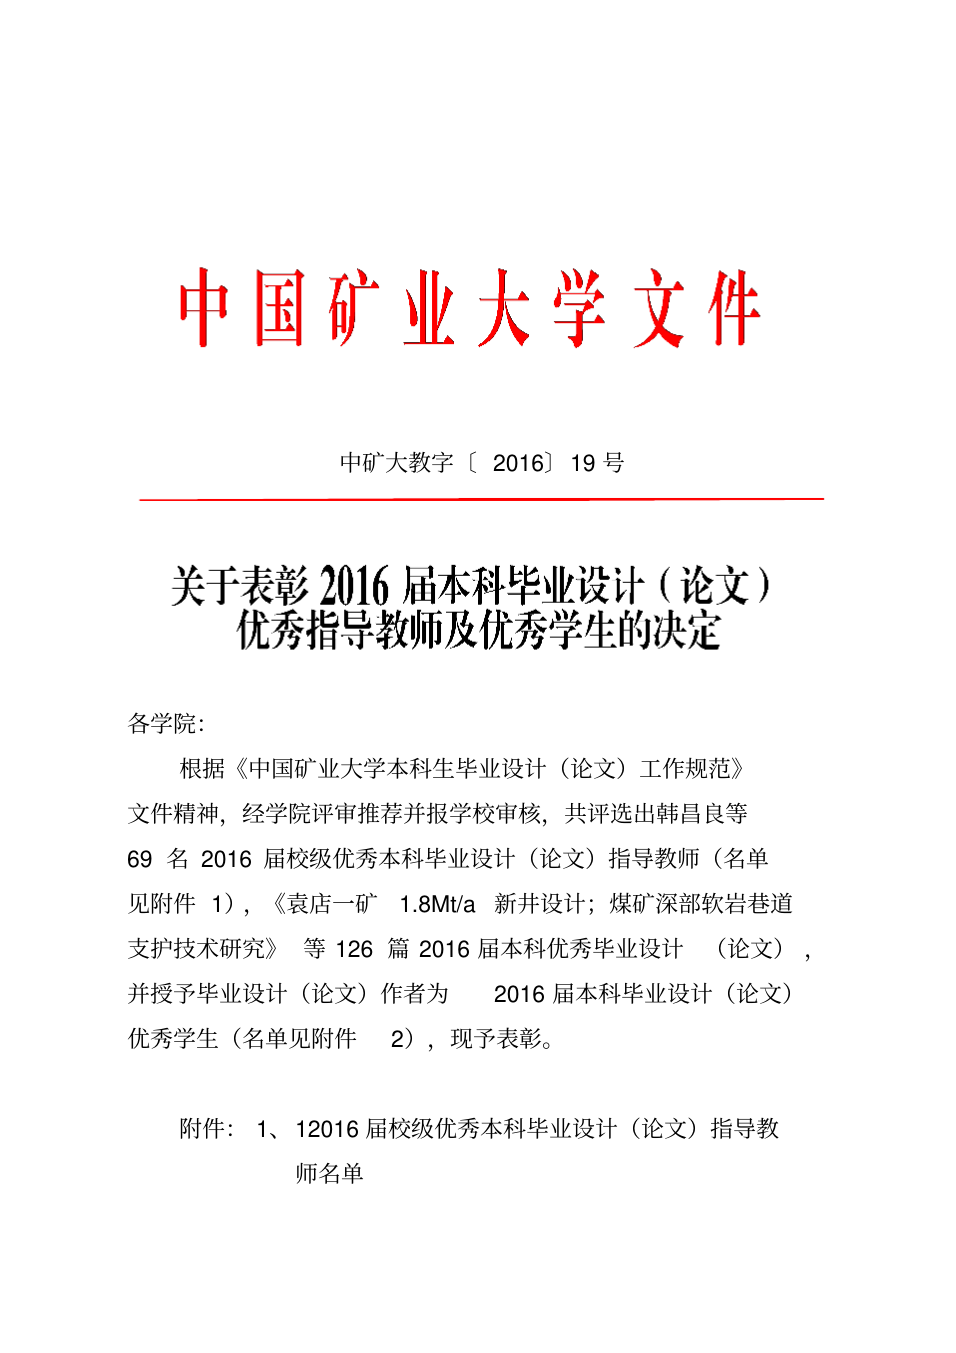 中国矿业大学本科生毕业设计论文工作规范_1.png